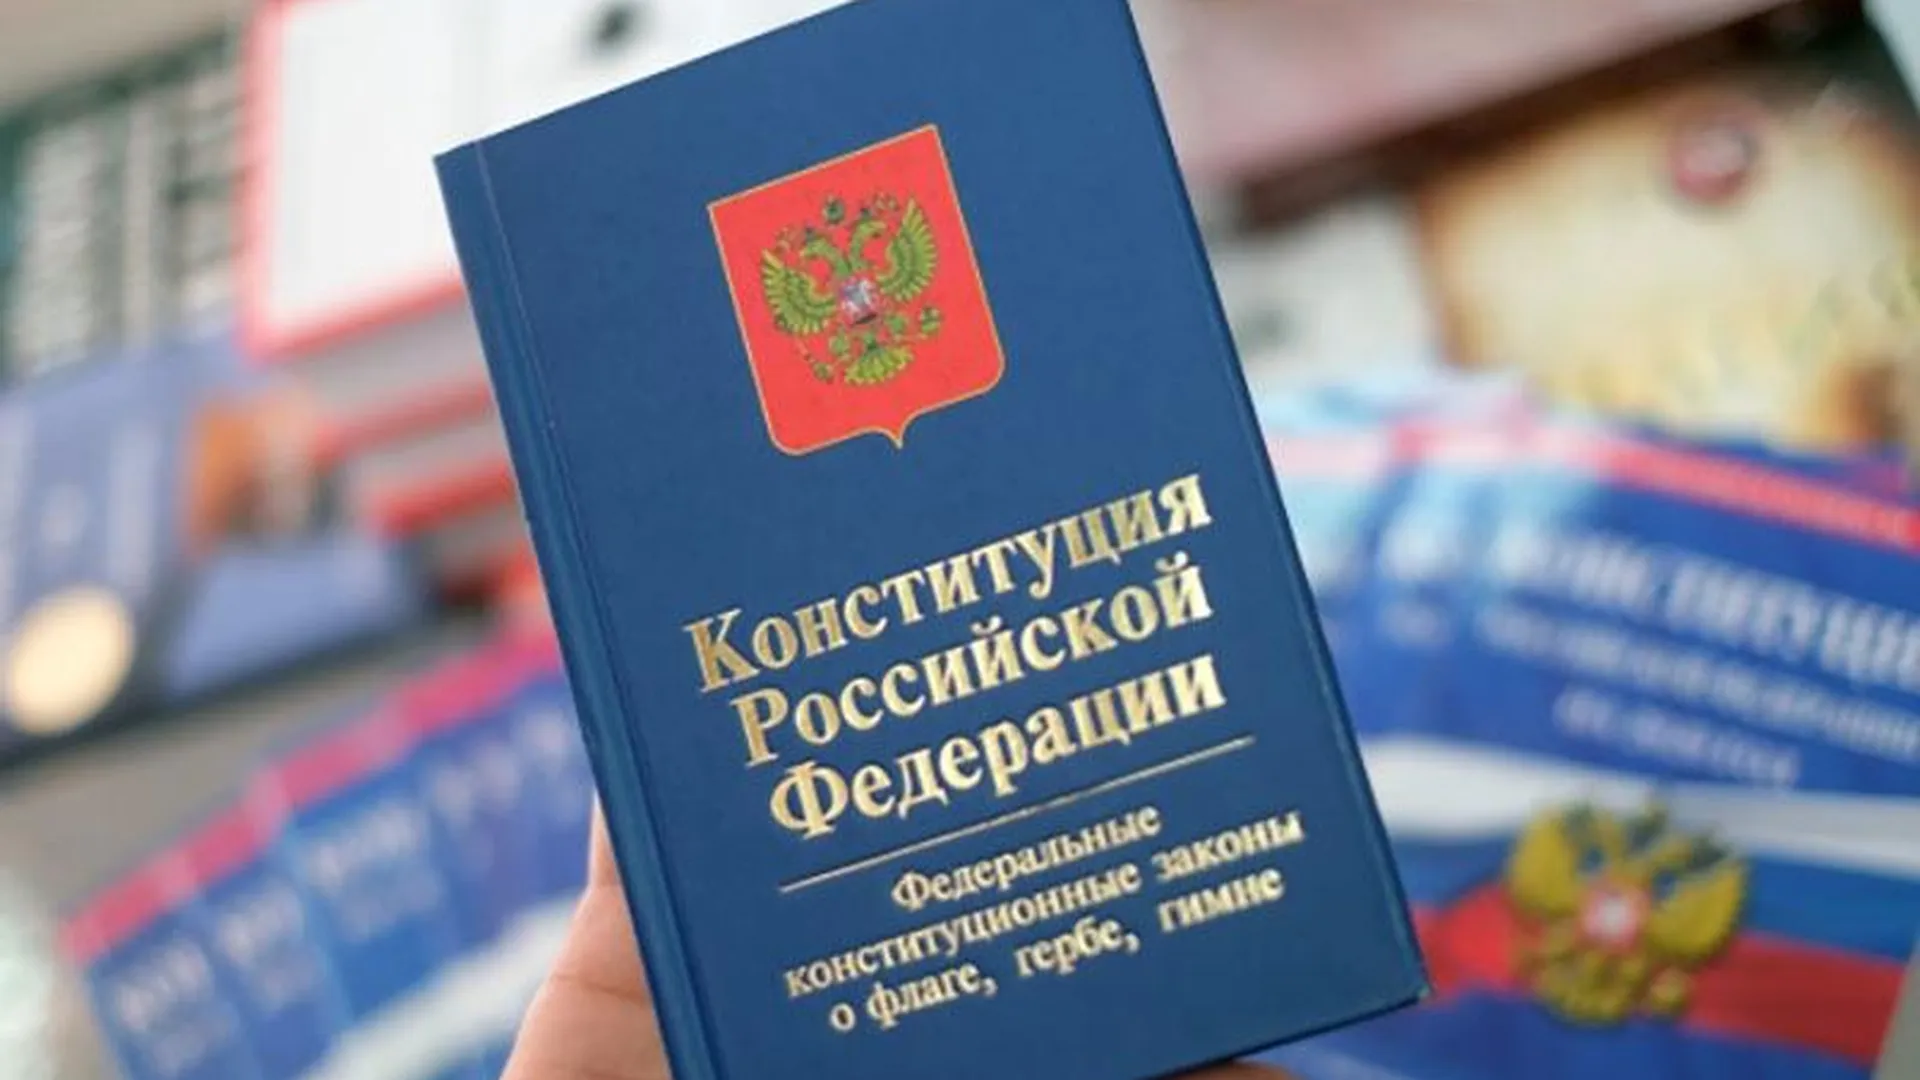 Жители Подмосковья смогут проголосовать за поправки в Конституцию бесконтактно на дому 